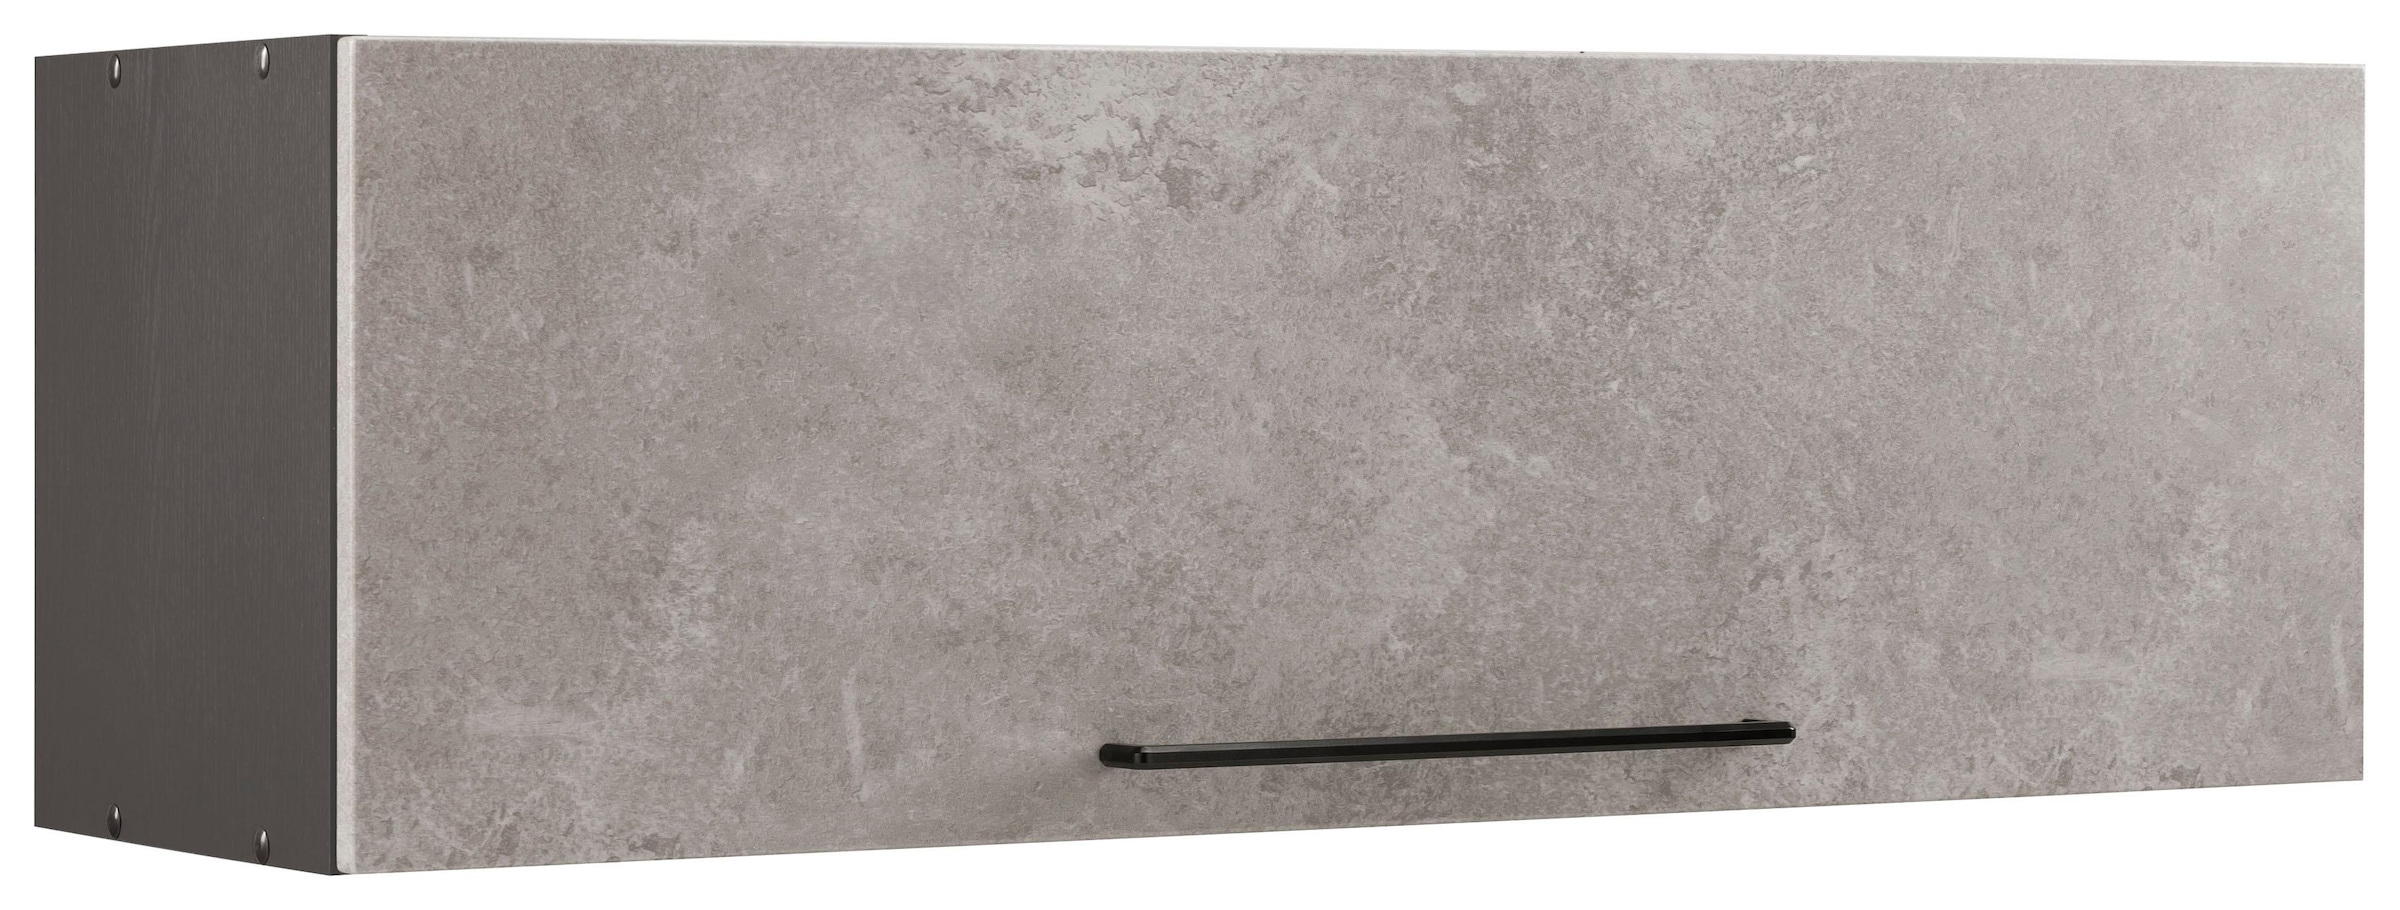 HELD MÖBEL Klapphängeschrank Klappe, MDF 1 sur Front breit, 100 cm schwarzer Trouver »Tulsa«, Metallgriff, mit